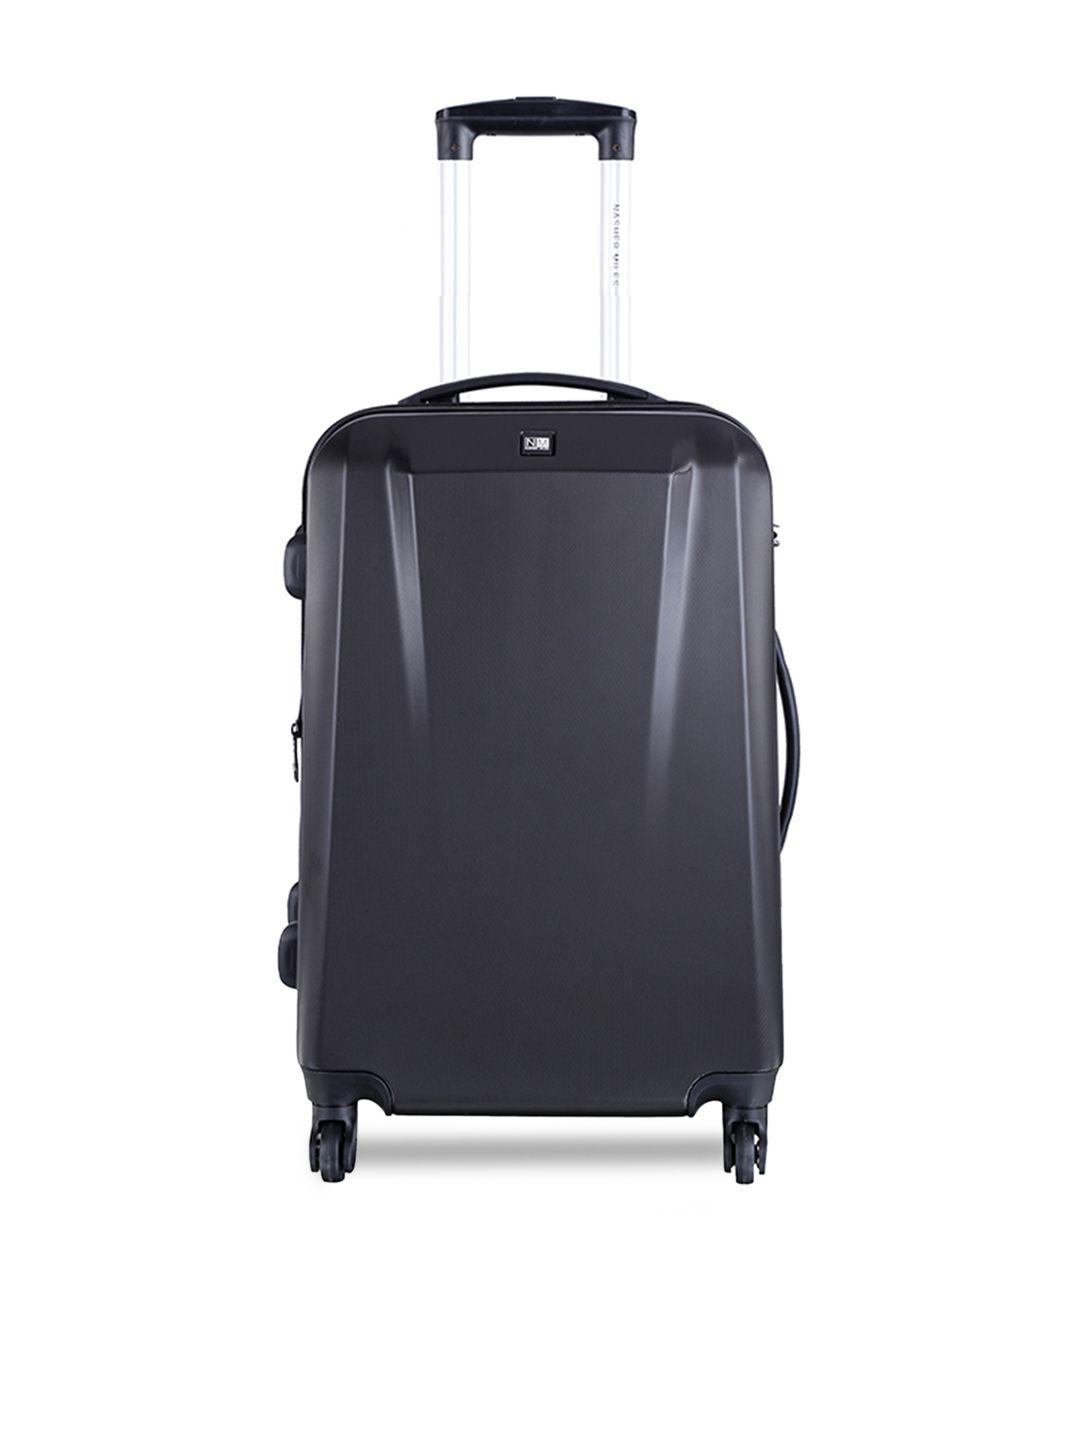 nasher-miles-unisex-black-medium-trolley-suitcase